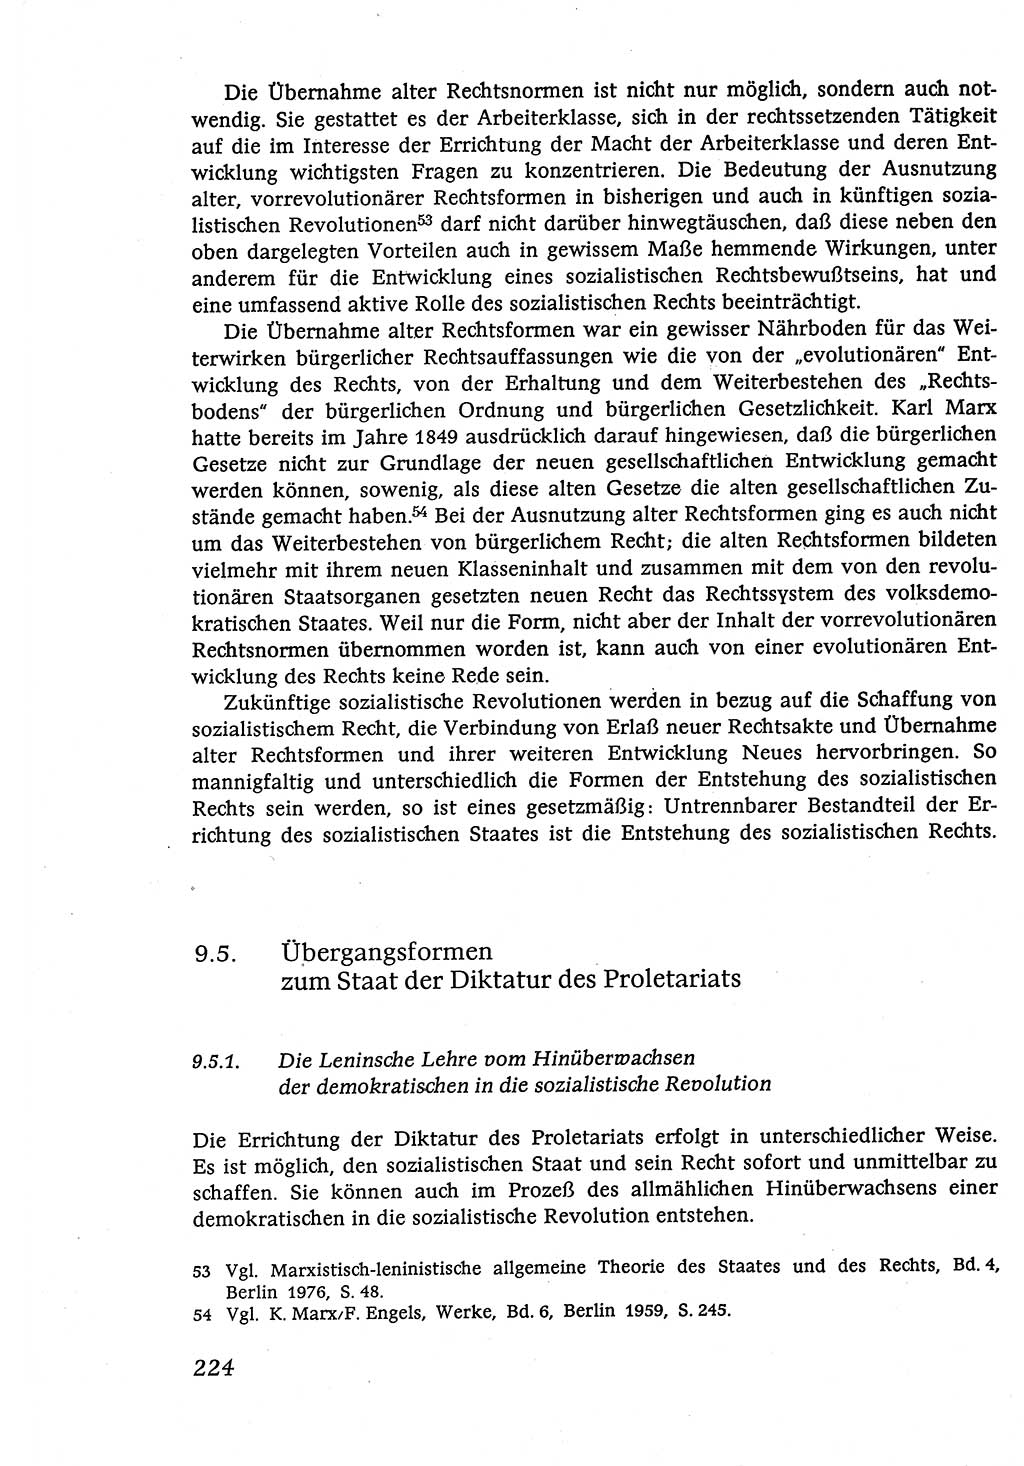 Marxistisch-leninistische (ML) Staats- und Rechtstheorie [Deutsche Demokratische Republik (DDR)], Lehrbuch 1980, Seite 224 (ML St.-R.-Th. DDR Lb. 1980, S. 224)